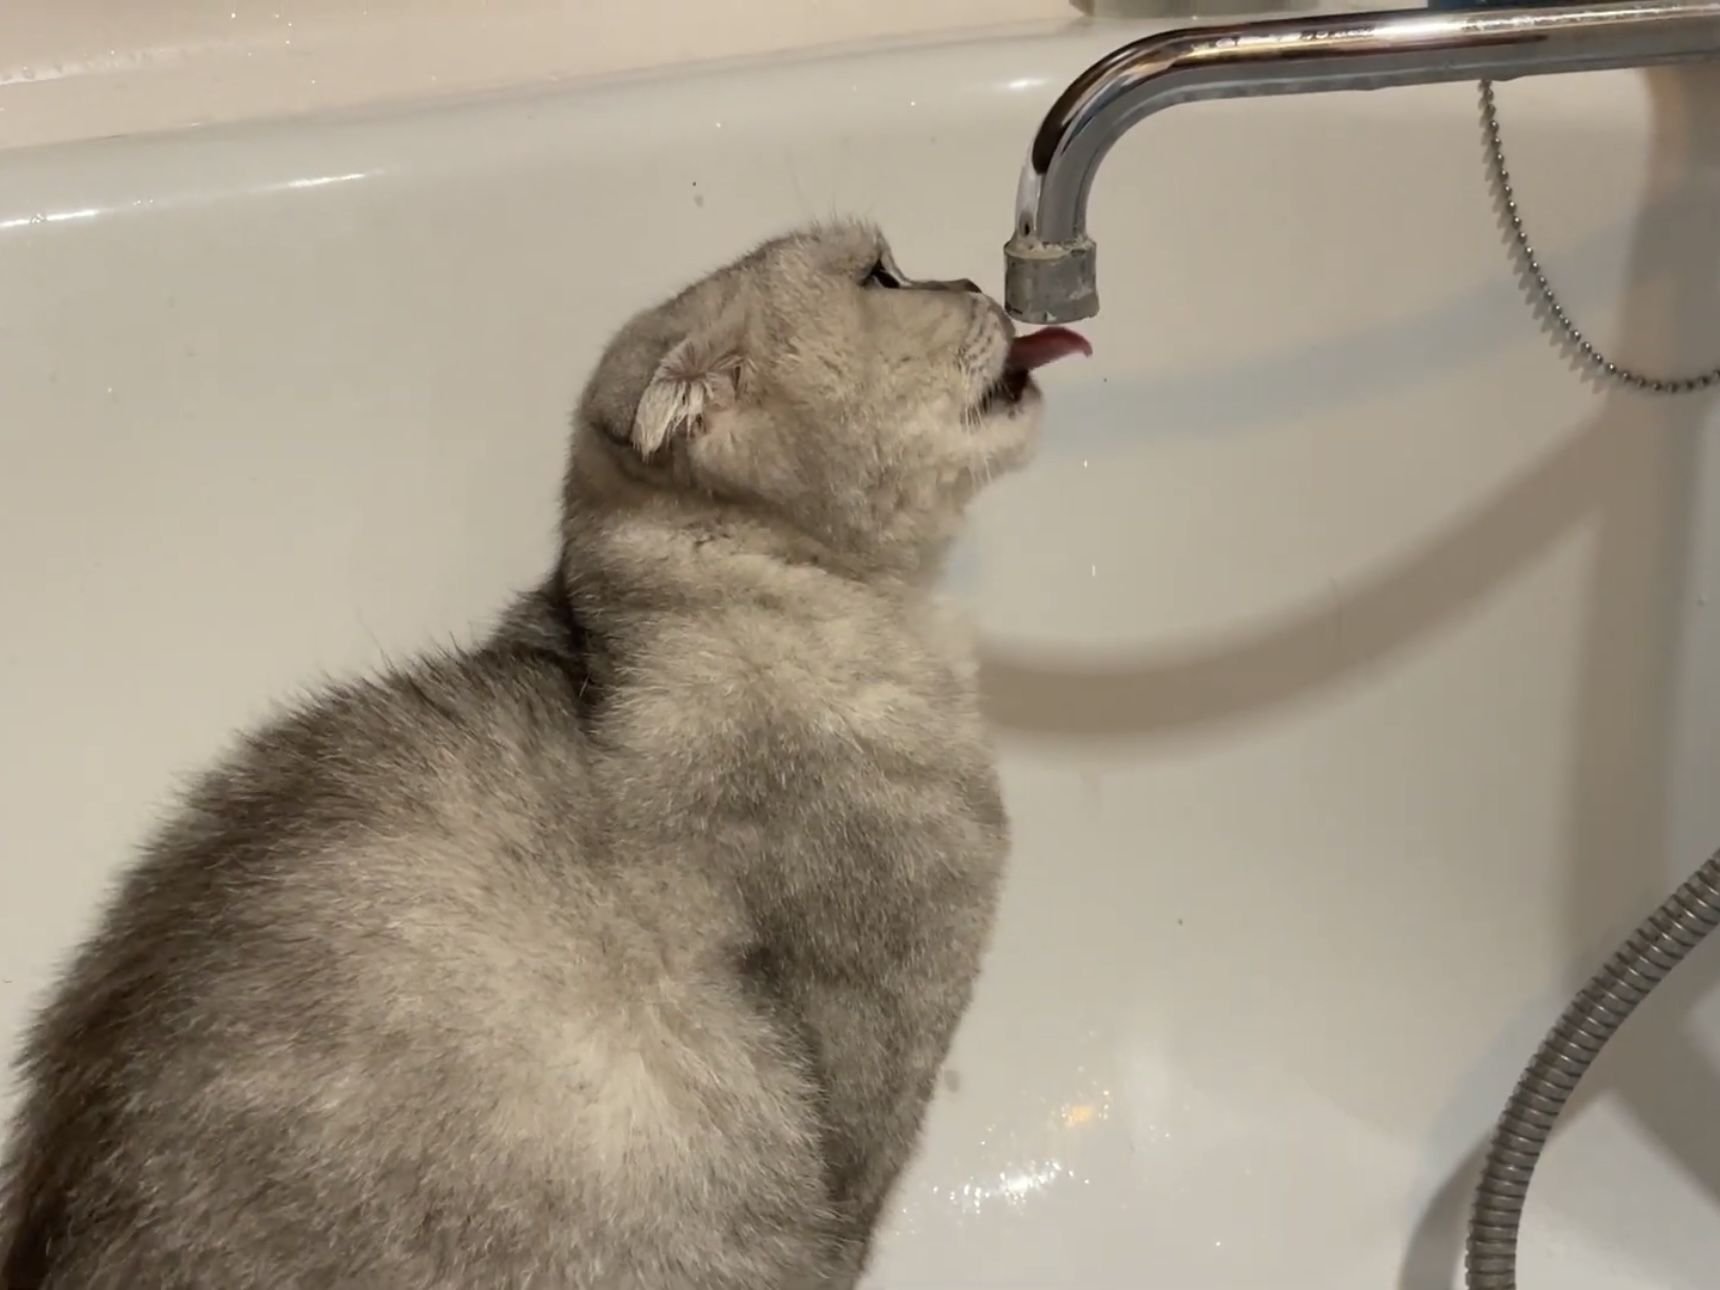 Вода бежит в ванне. Нет воды. Кот пьет воду из под крана. Котик лижет воду из под крана. Кот пьет яйцевую воду.